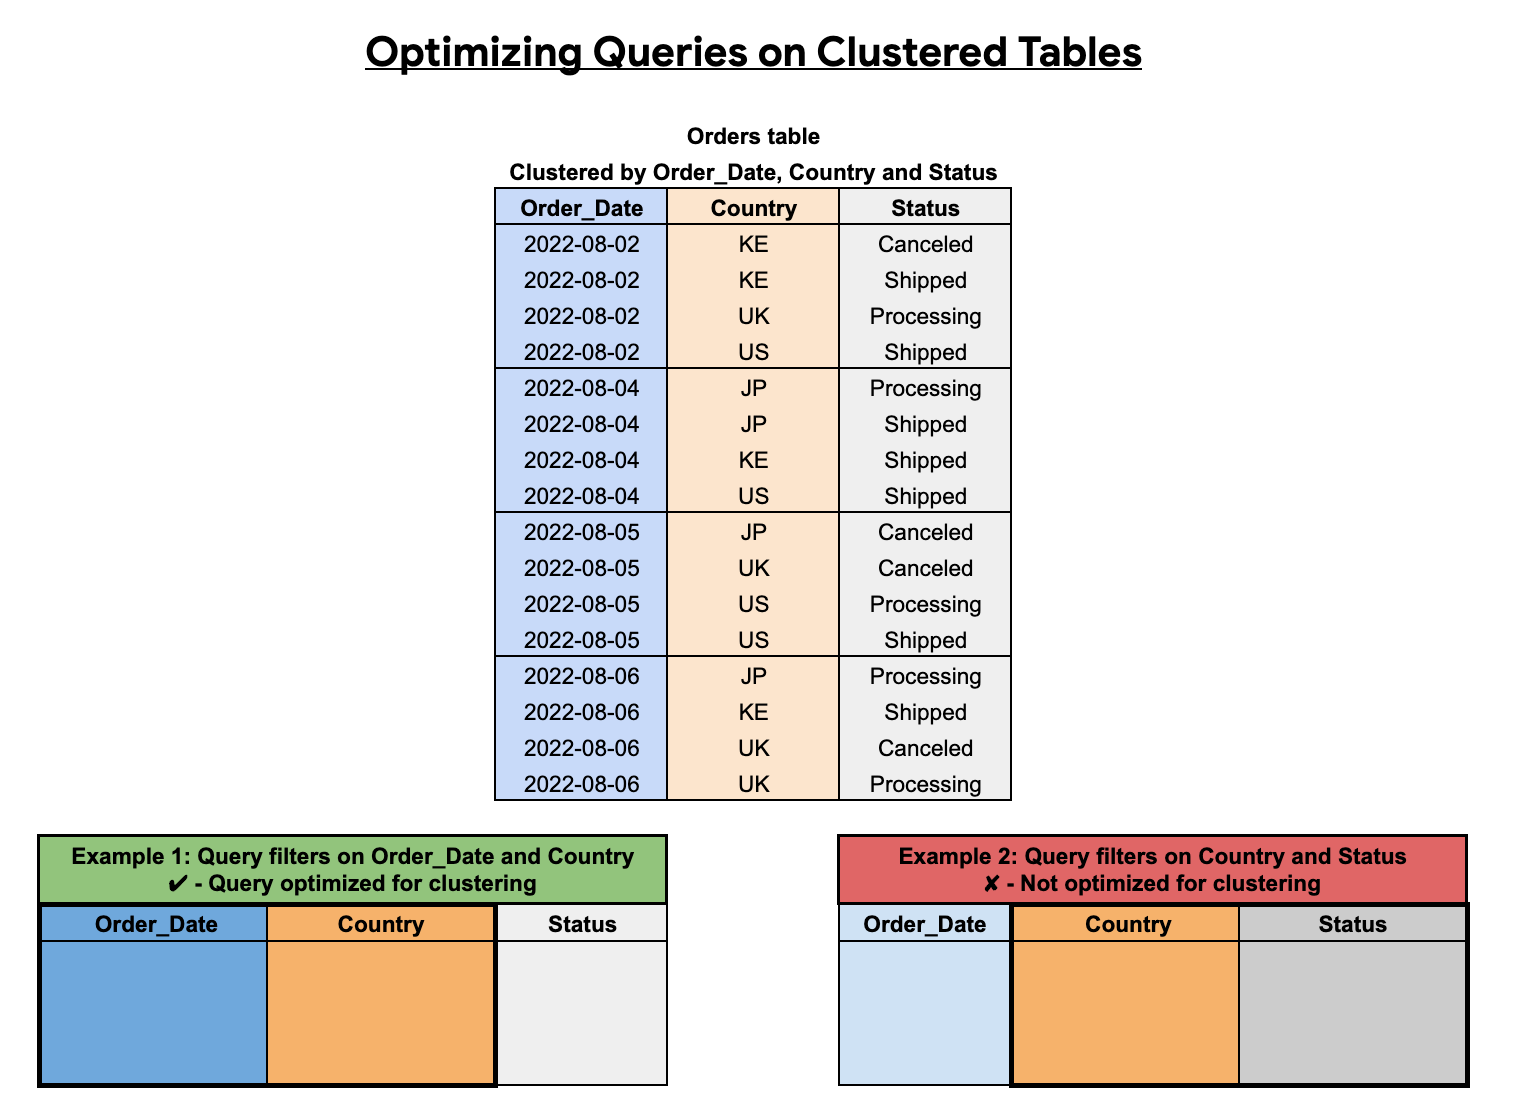 Las consultas en tablas agrupadas deben incluir columnas agrupadas en orden a partir de la primera.